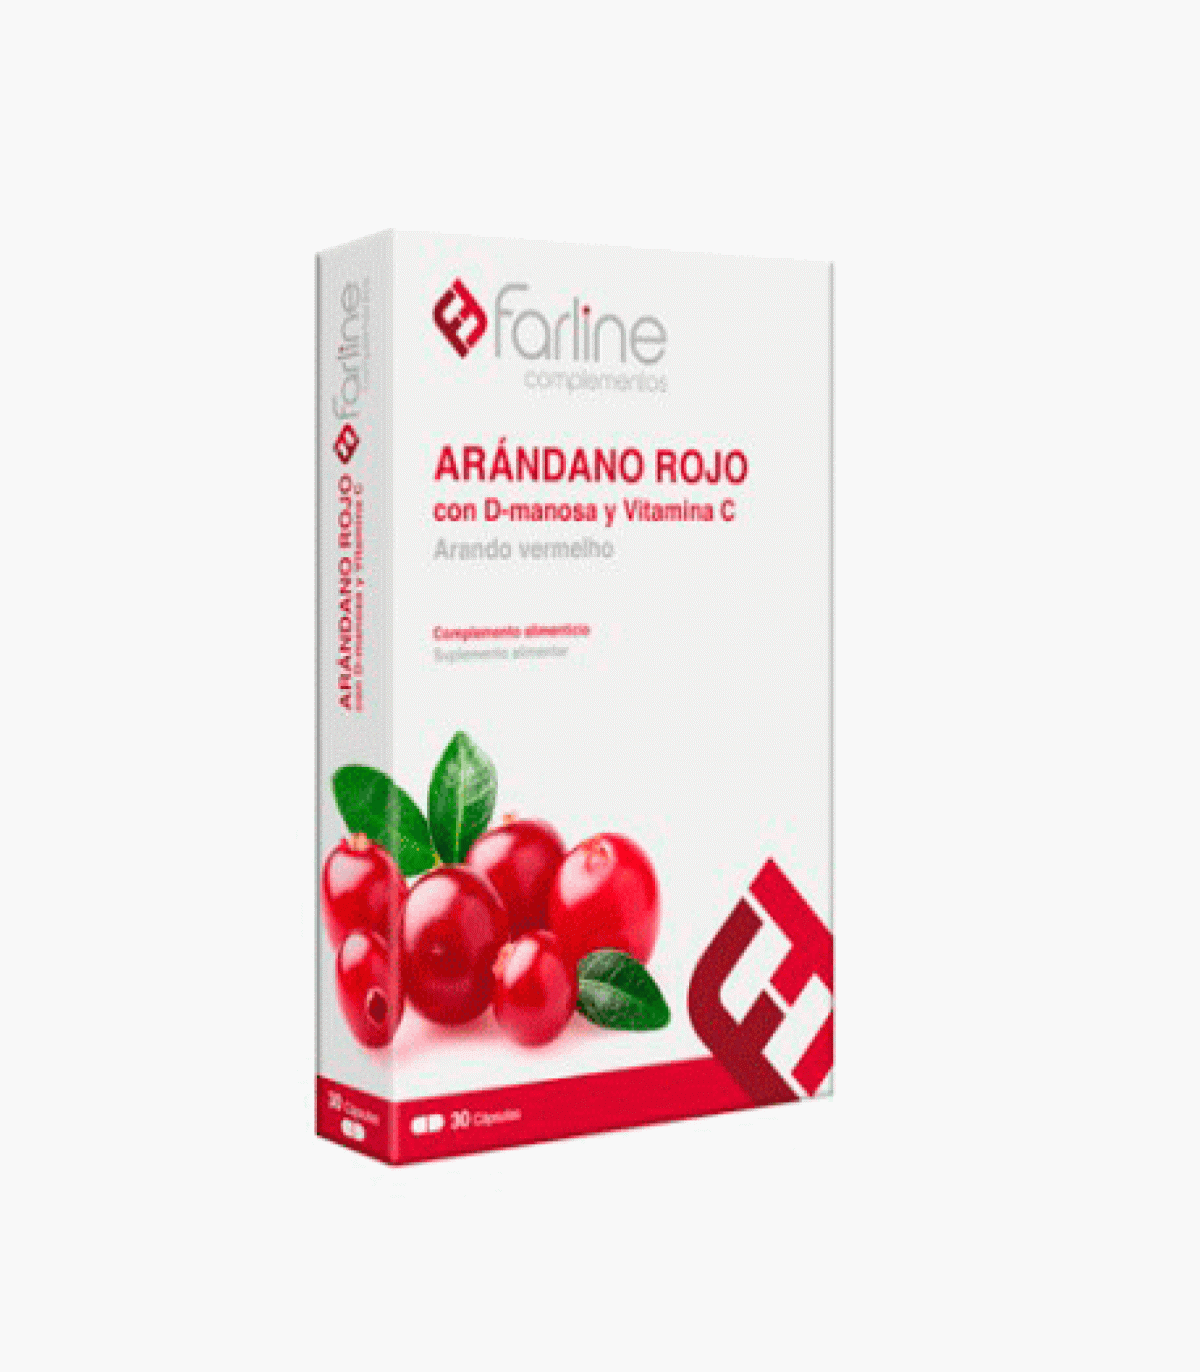 Farline Arándano Rojo 30 cápsulas + Regalo de Toallitas Higiene Intima